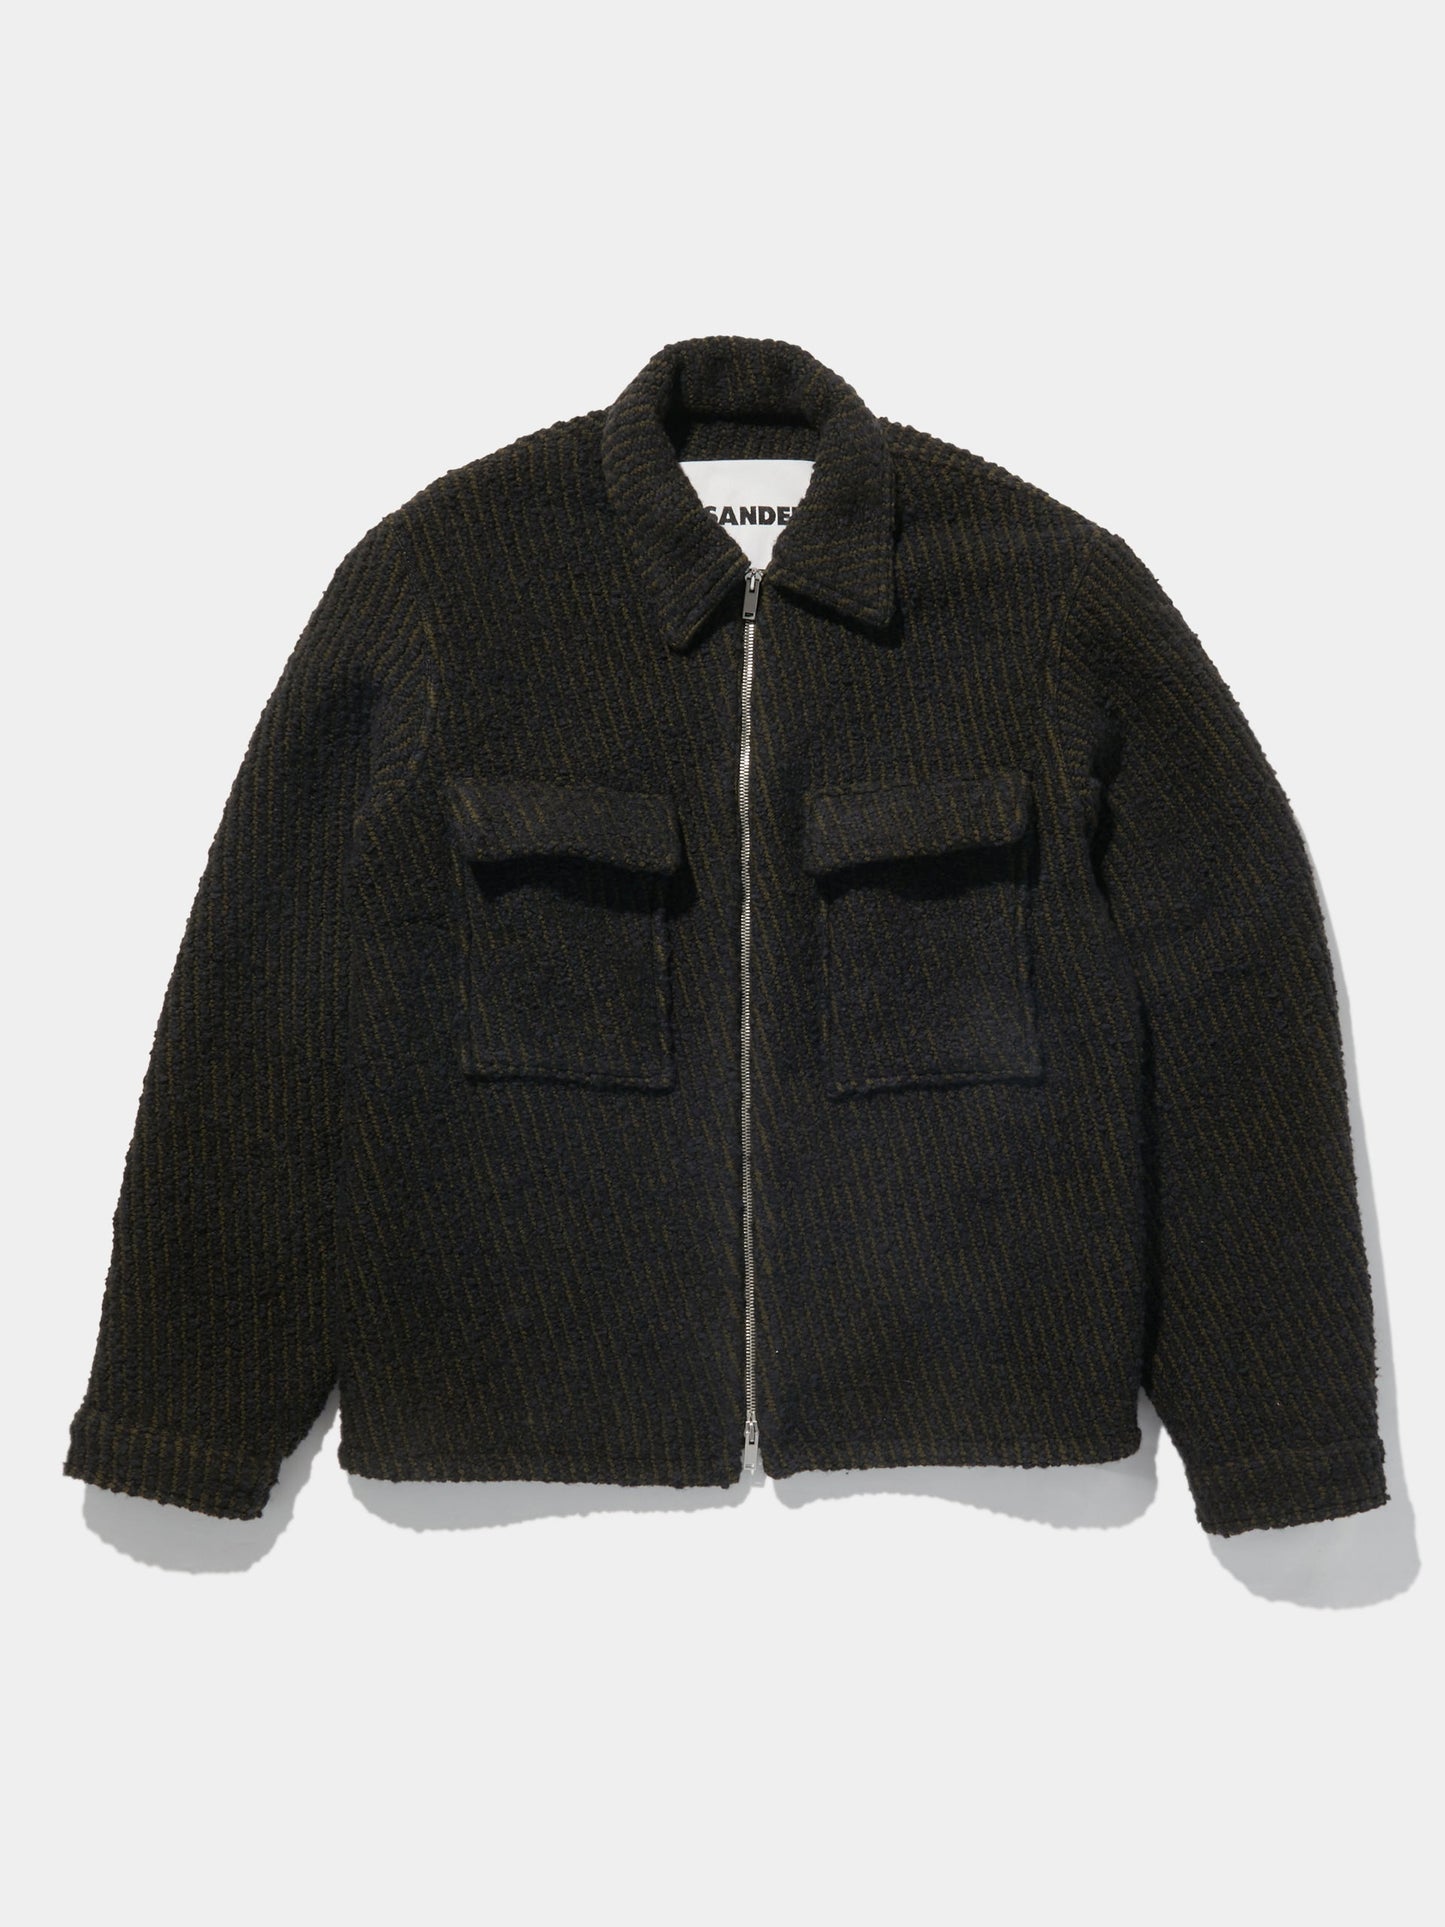 Wool Zip Jacket (Open Navy)